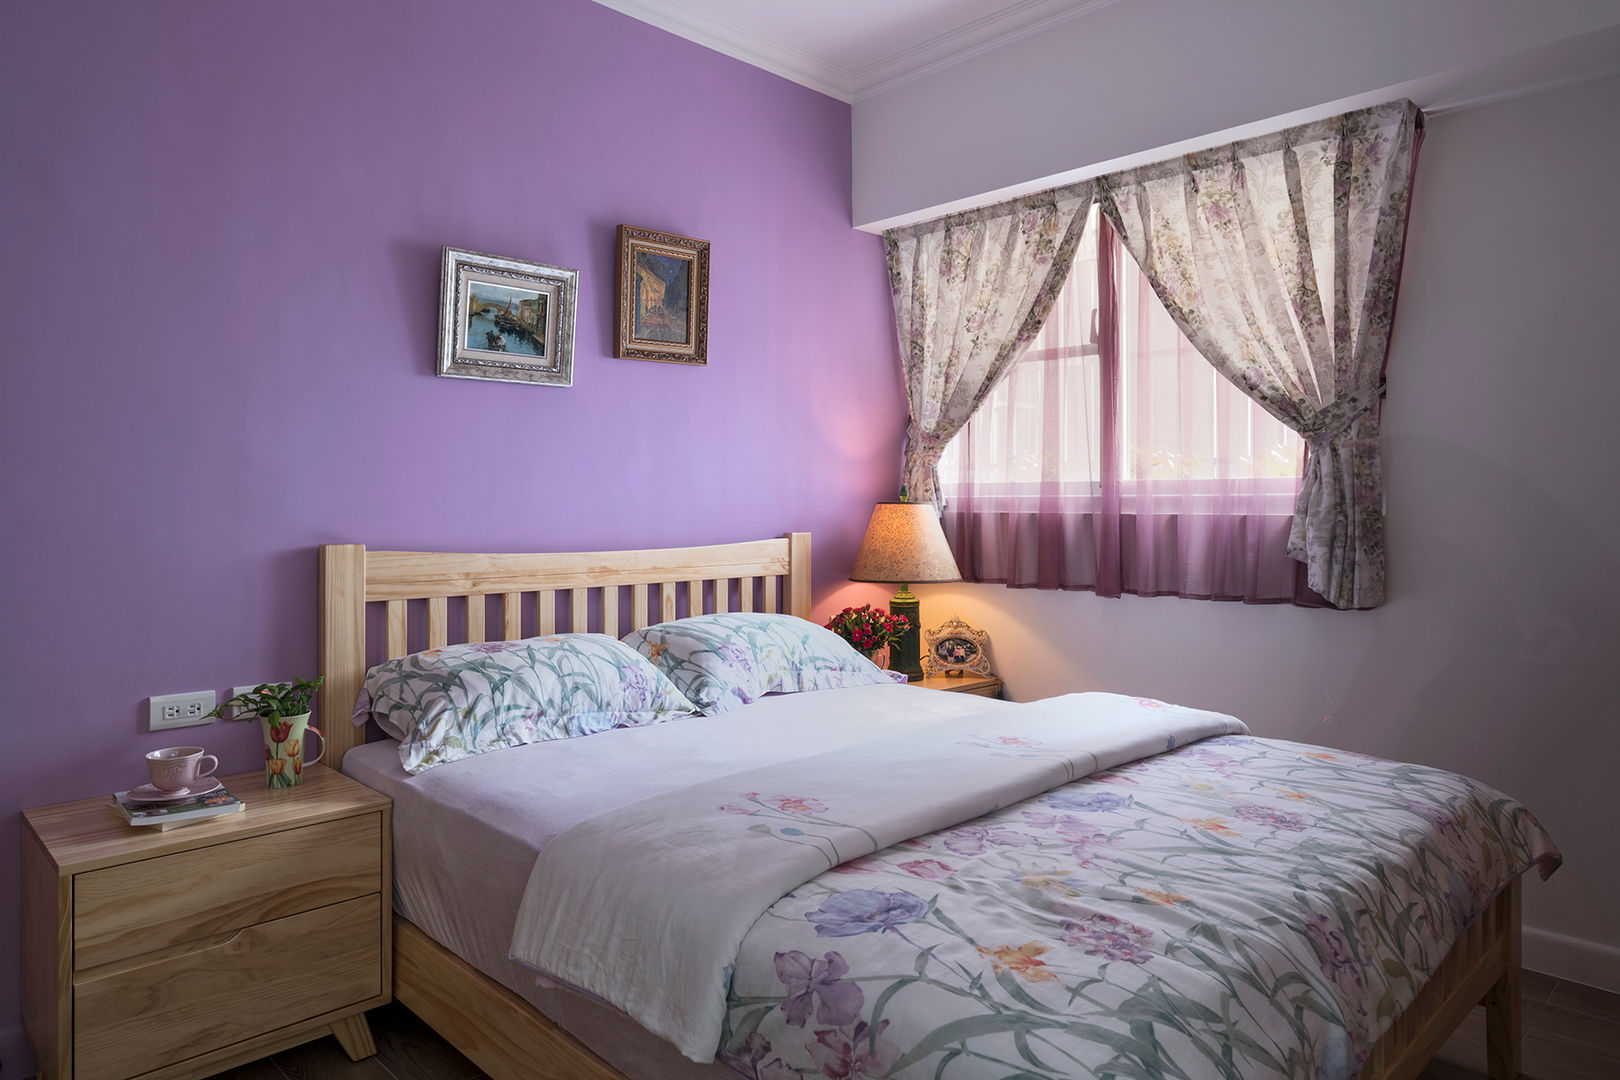 市區45年老屋華麗轉身 恬靜鄉村風, Color-Lotus Design Color-Lotus Design Modern living ٹھوس لکڑی Multicolored Beds & headboards